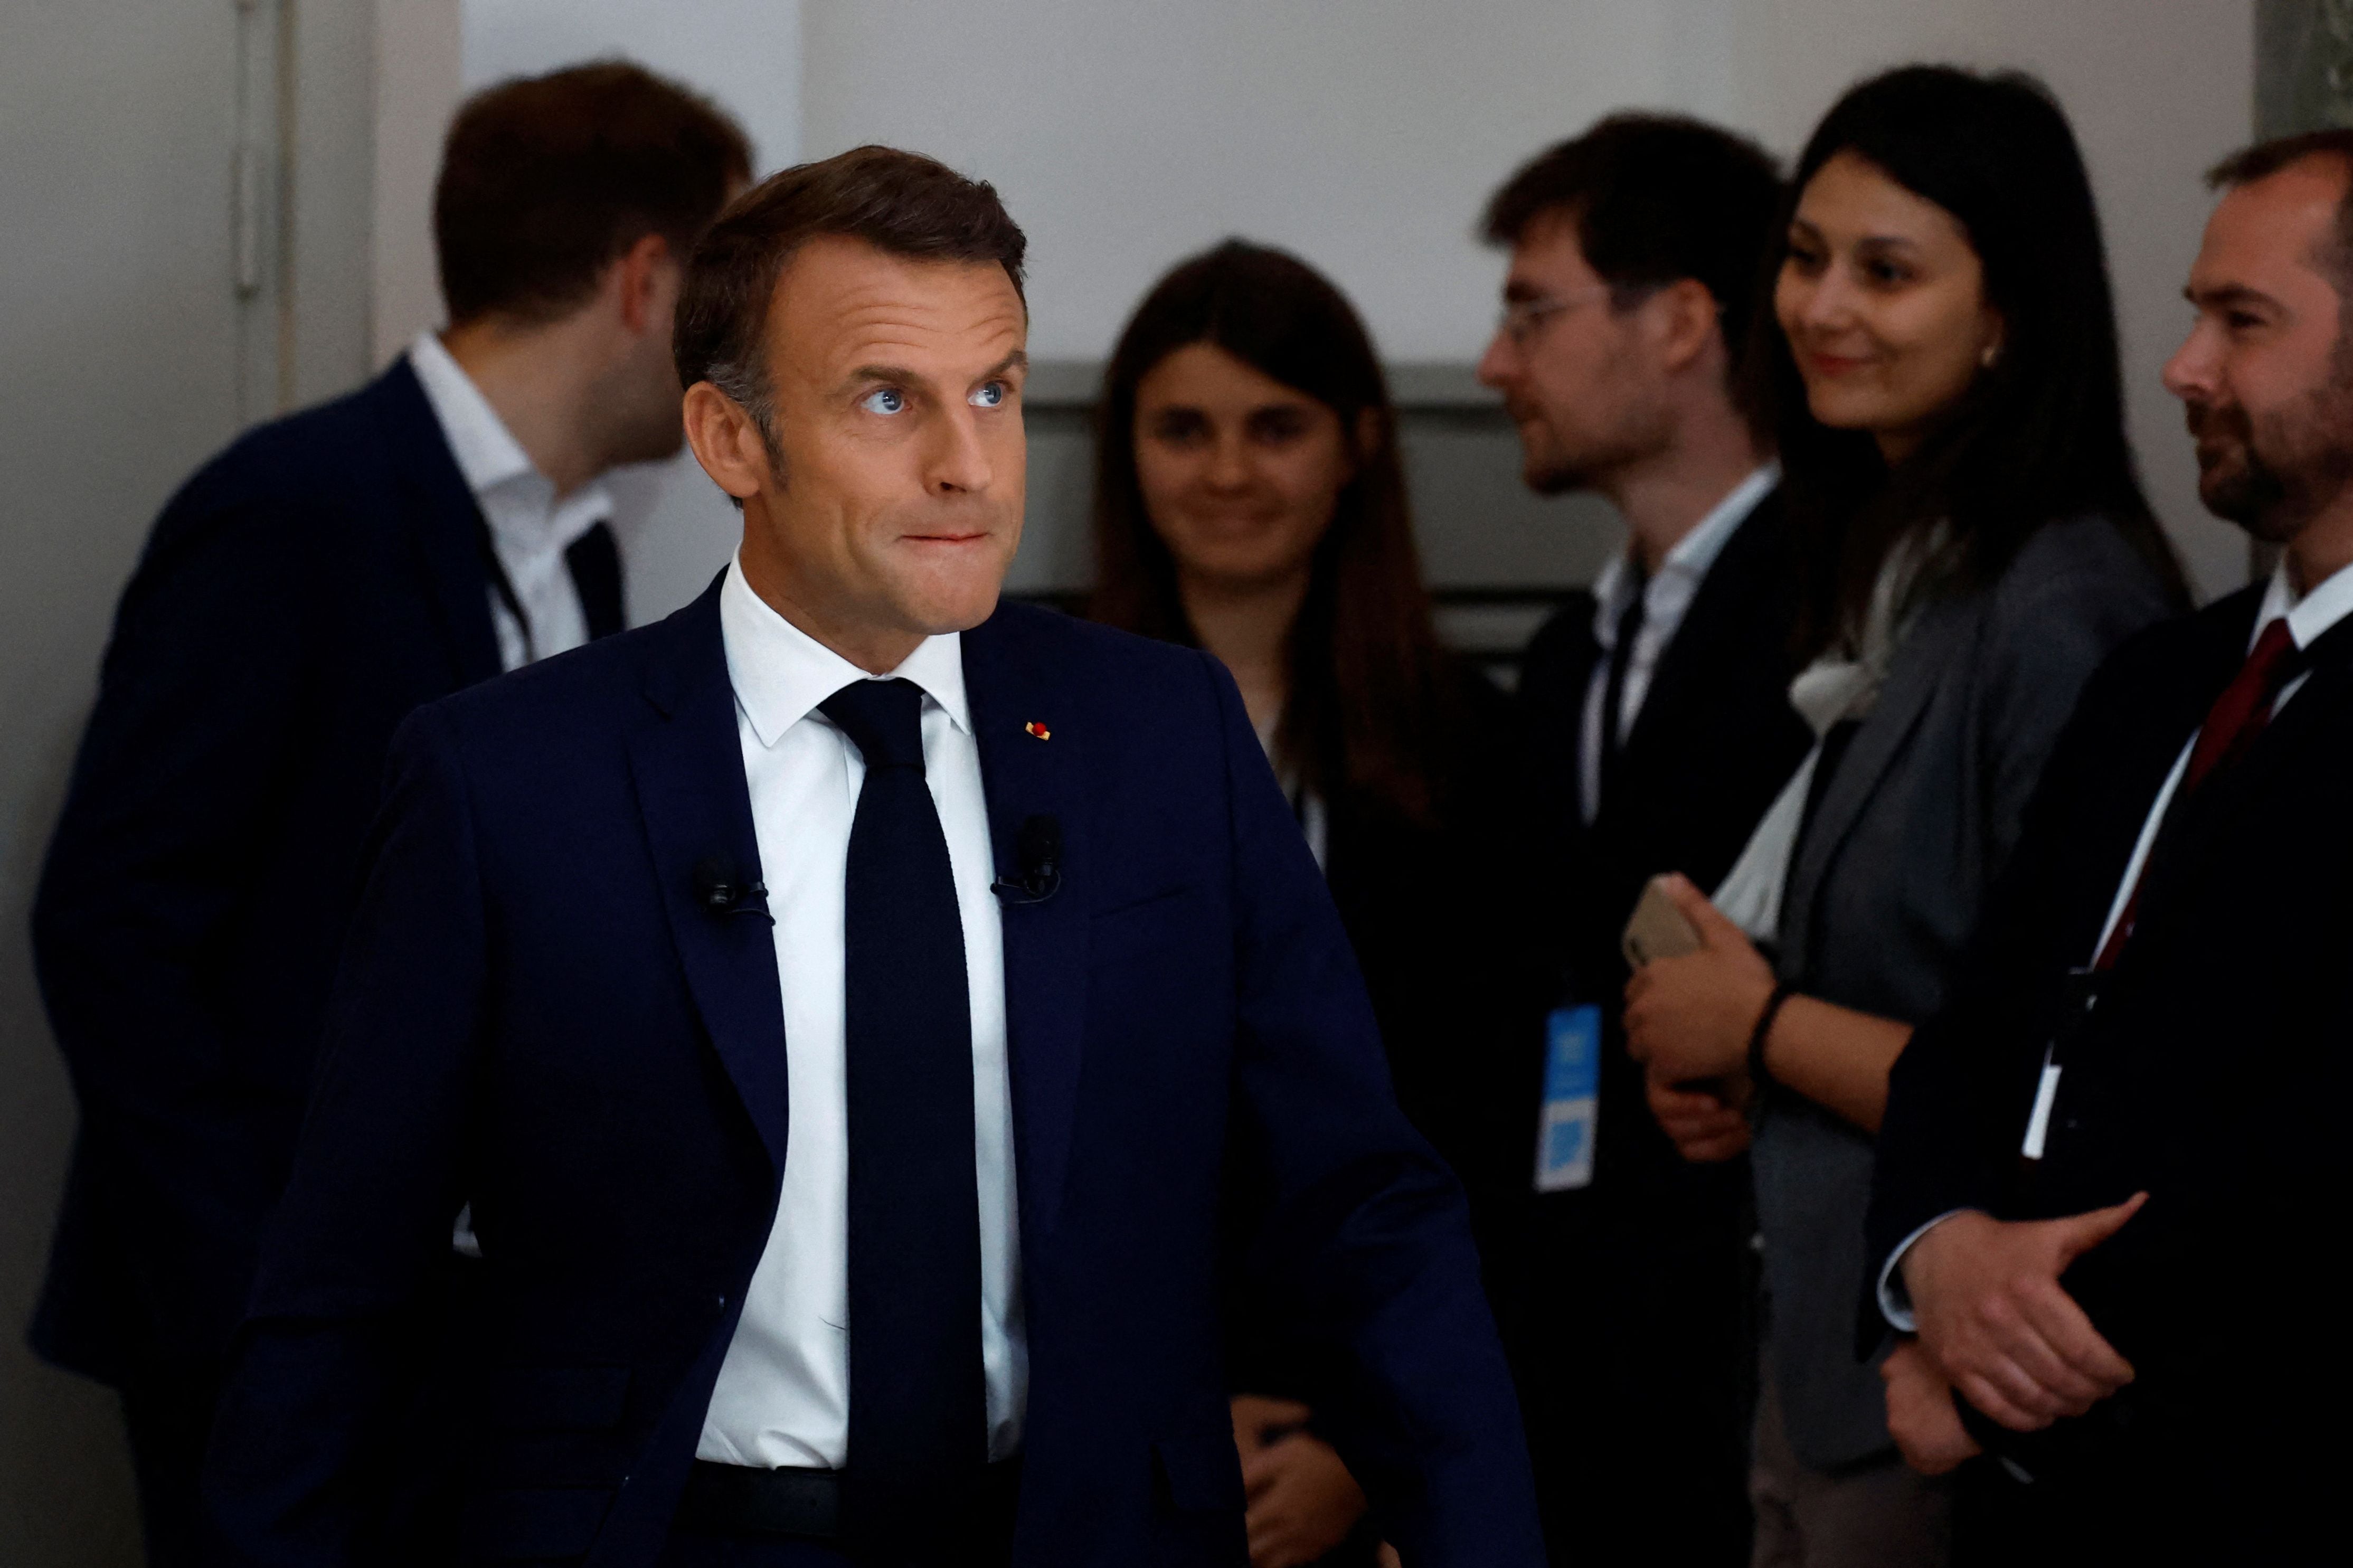 Macron entra en campaña y ataca “las alianzas contra natura” a izquierda y derecha